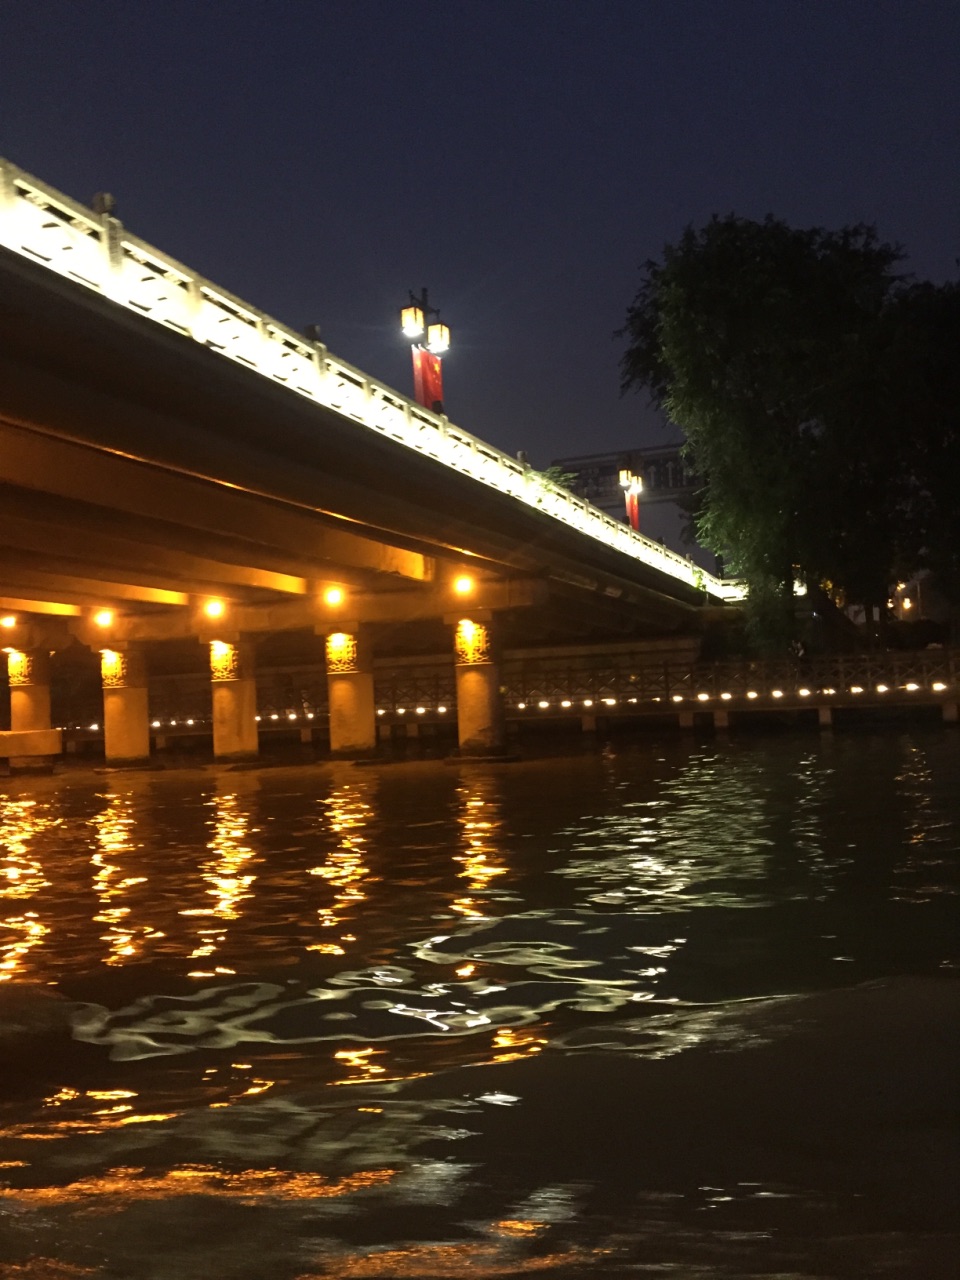 【携程攻略】苏州新市桥堍古运河旅游码头景点,夜游京杭大运河,船上有